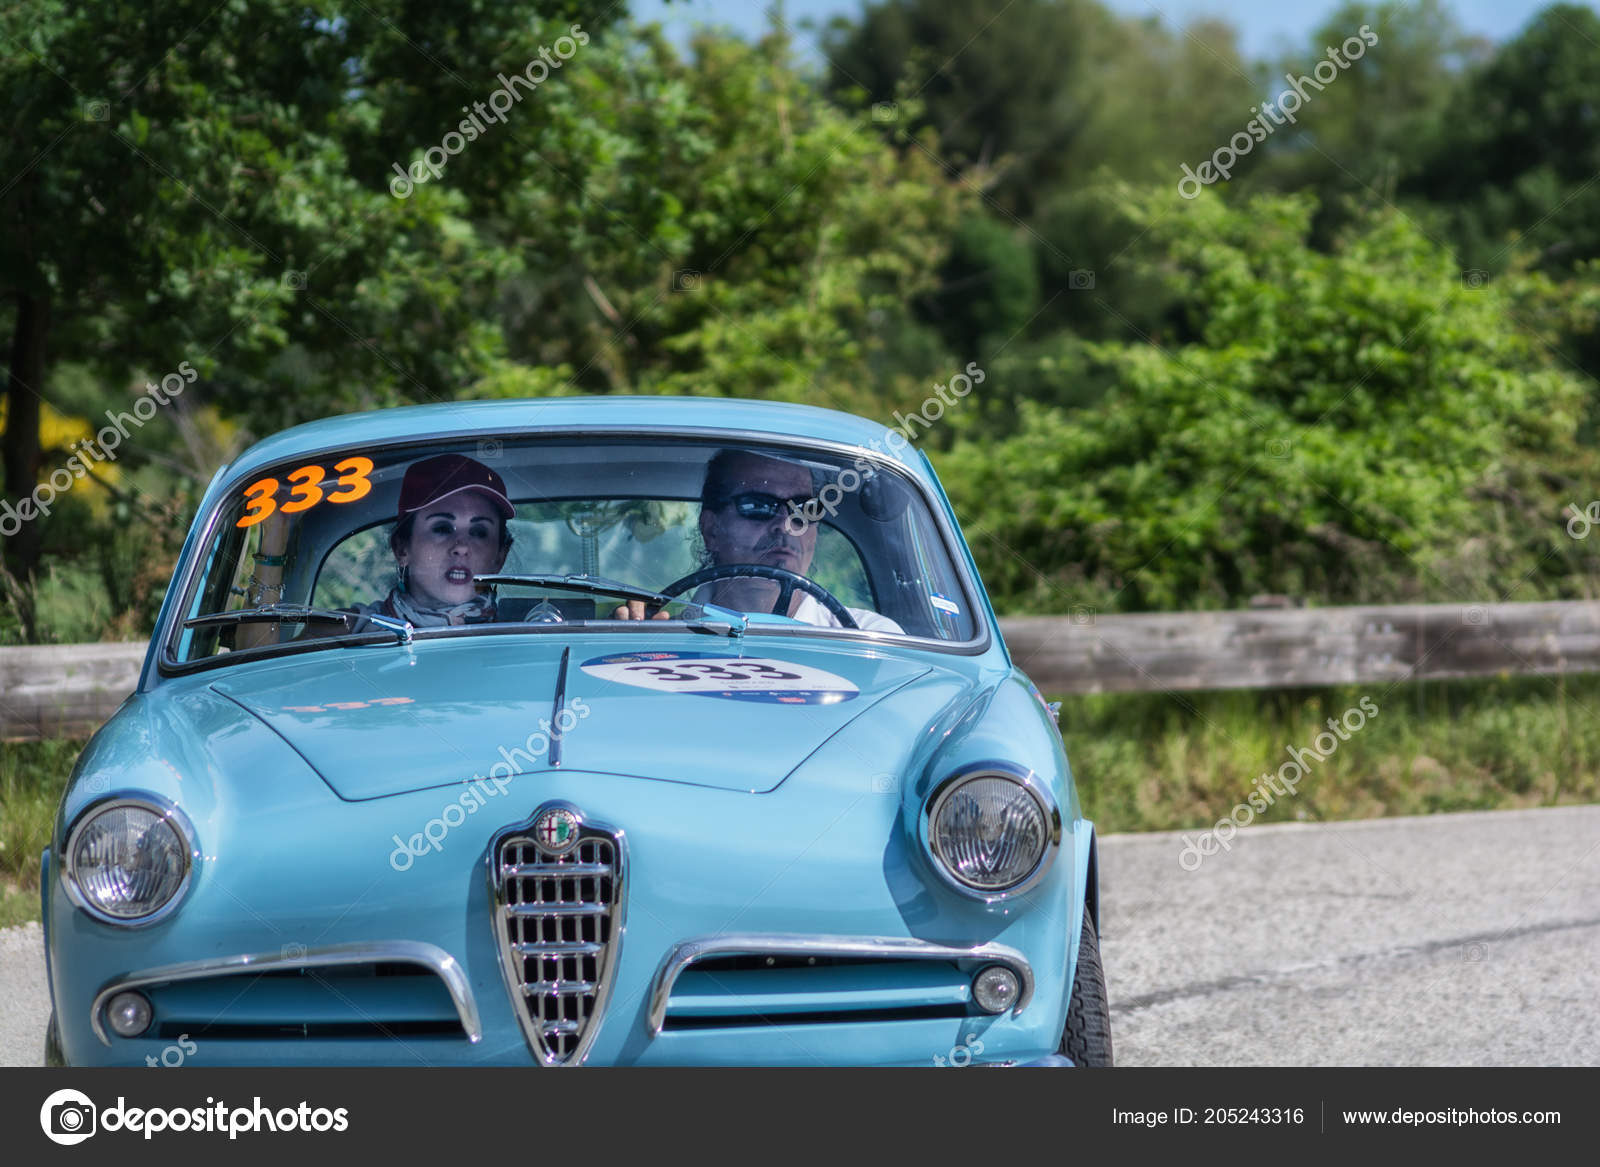 Famosa corrida italiana de carros antigos chega aos EUA